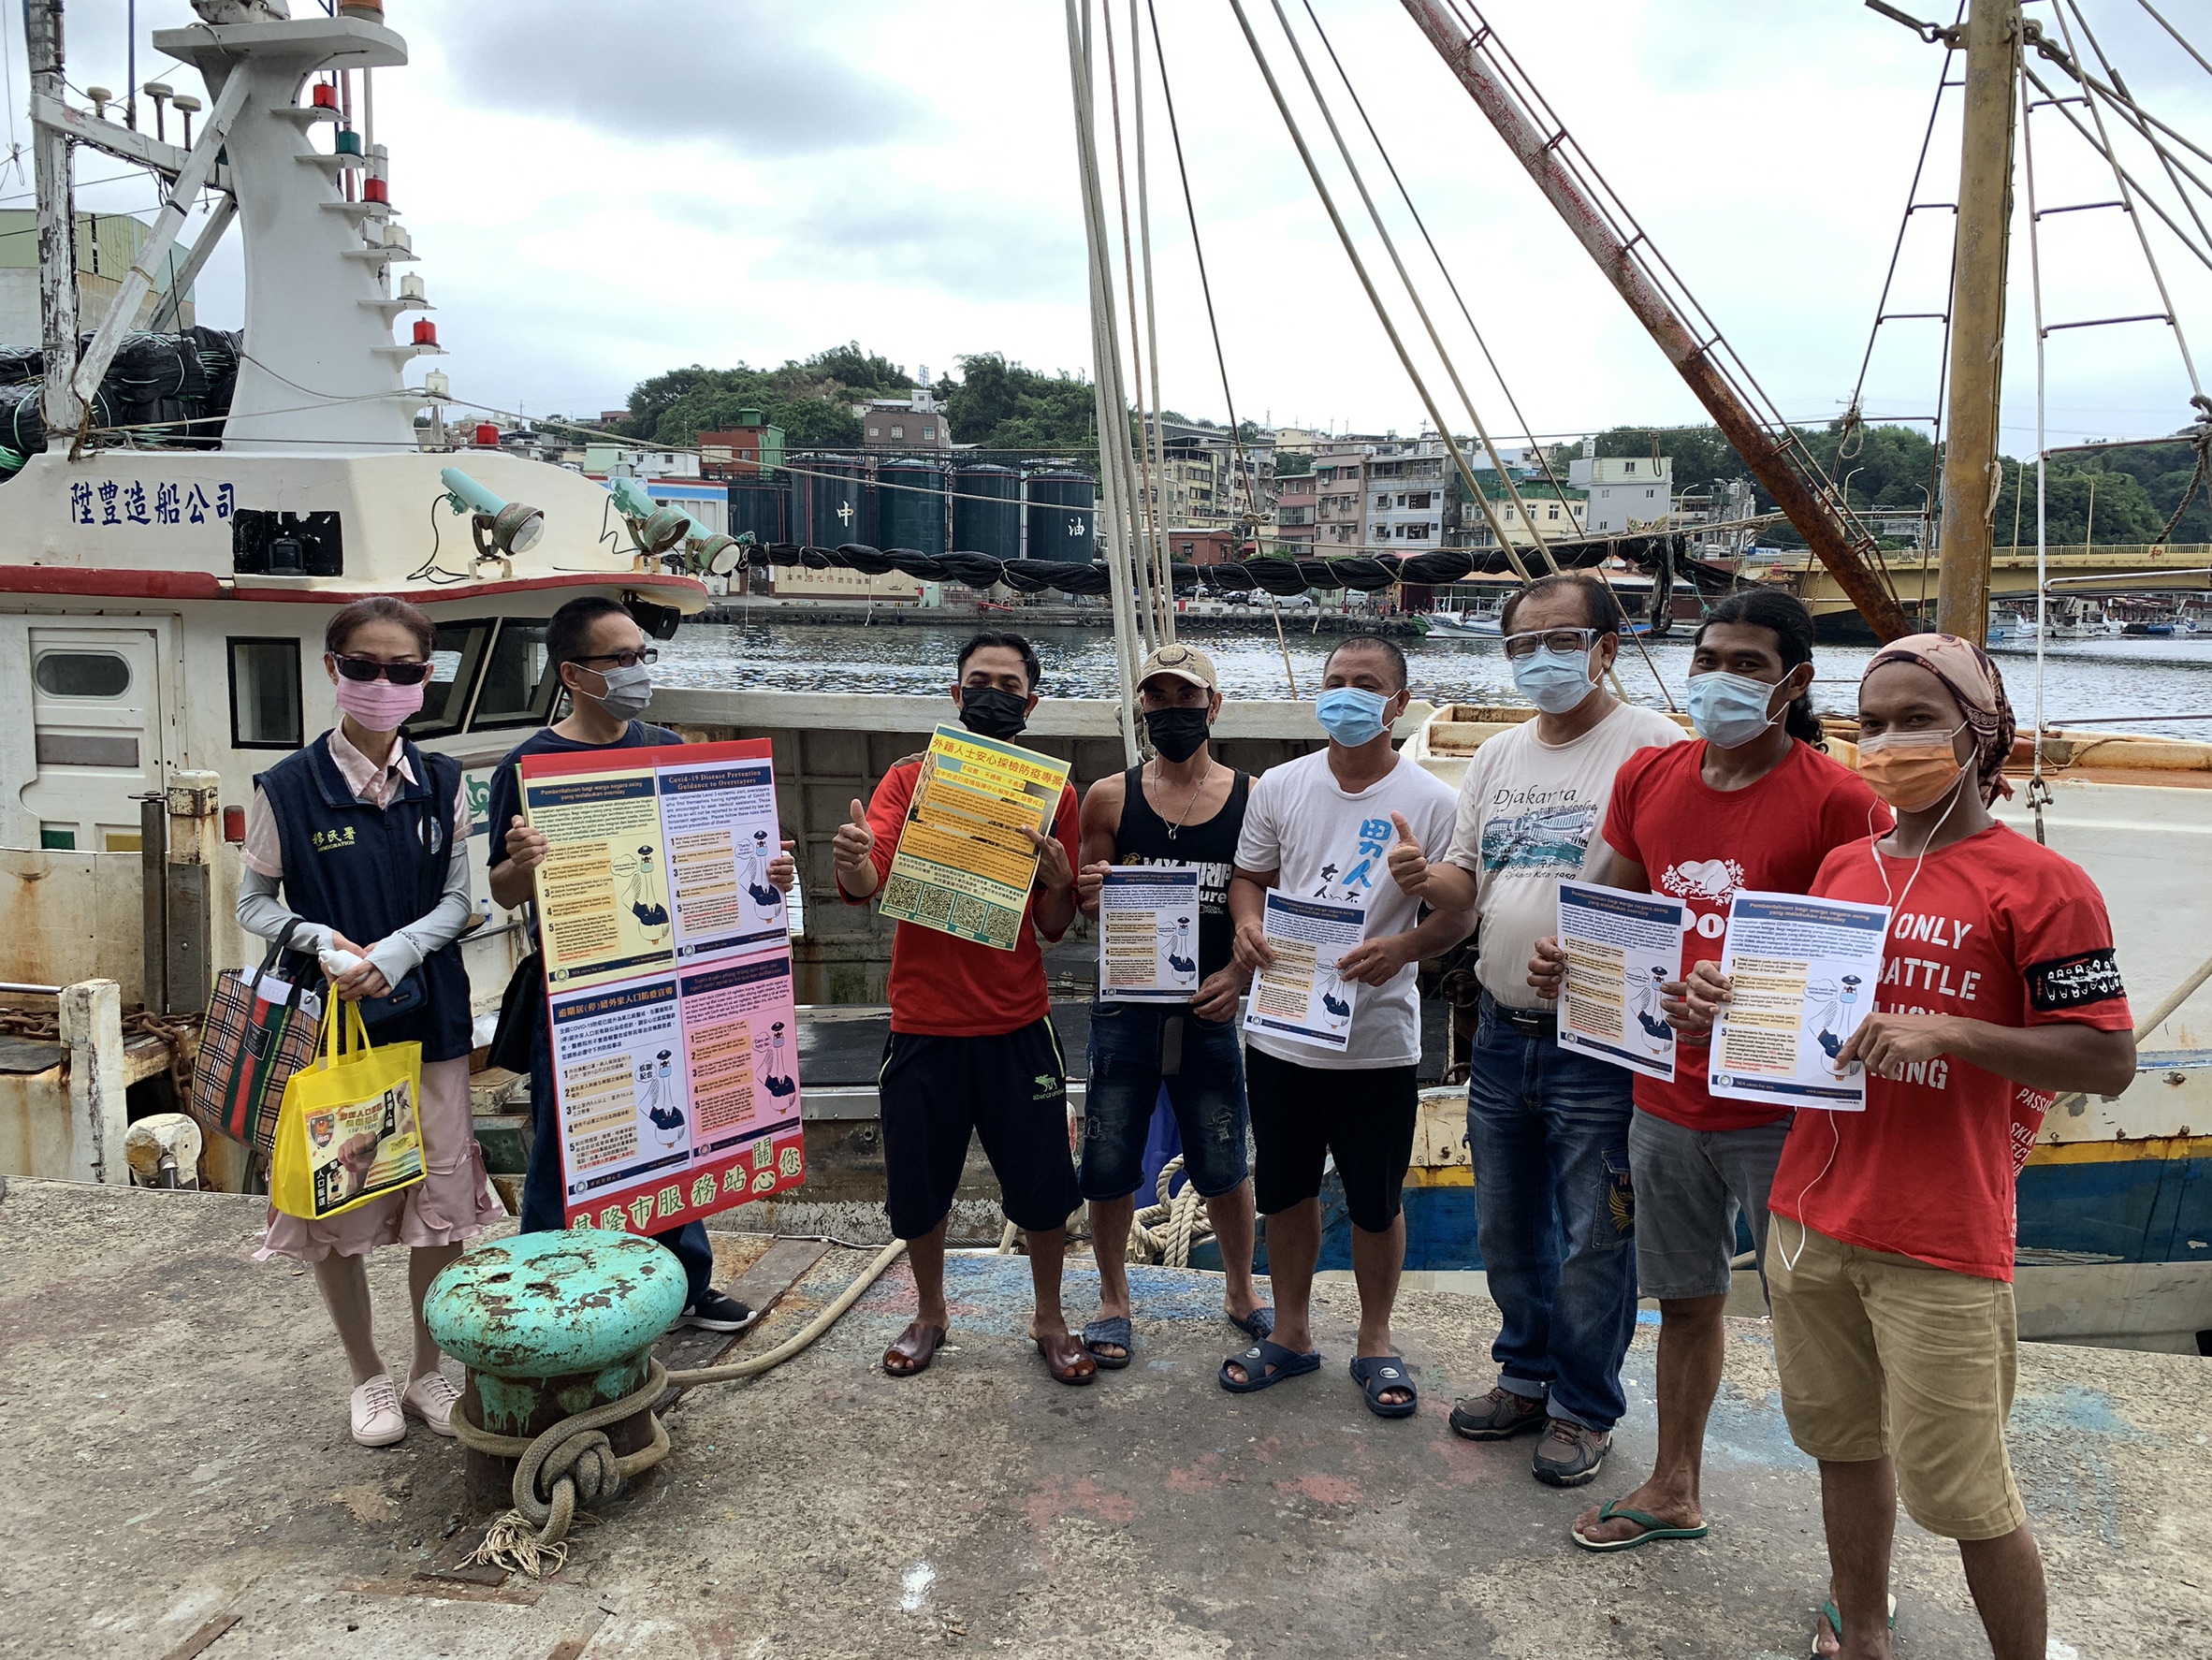 Departemen Imigrasi pergi ke pelabuhan perikanan untuk mempromosikan "Inspeksi Keselamatan". Sumber: Diambil dari Stasiun Layanan Kota Keelung